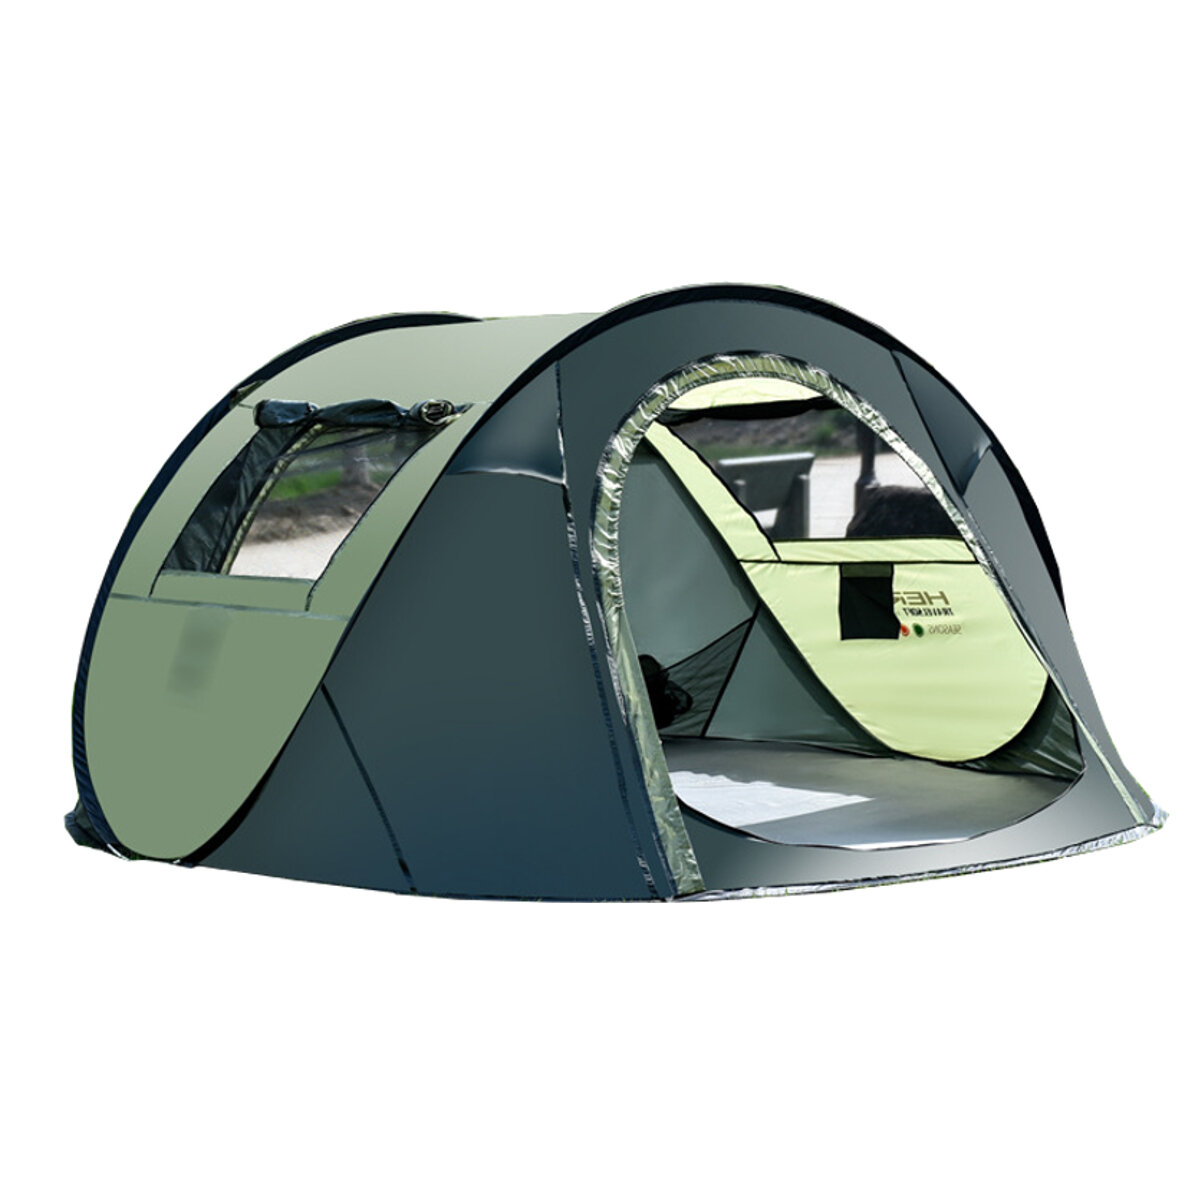 5-8 személyes vízálló kemping sátor automatikus felbukkanó gyorsmenhely szabadtéri utazás túra sátor-kávé / zöld